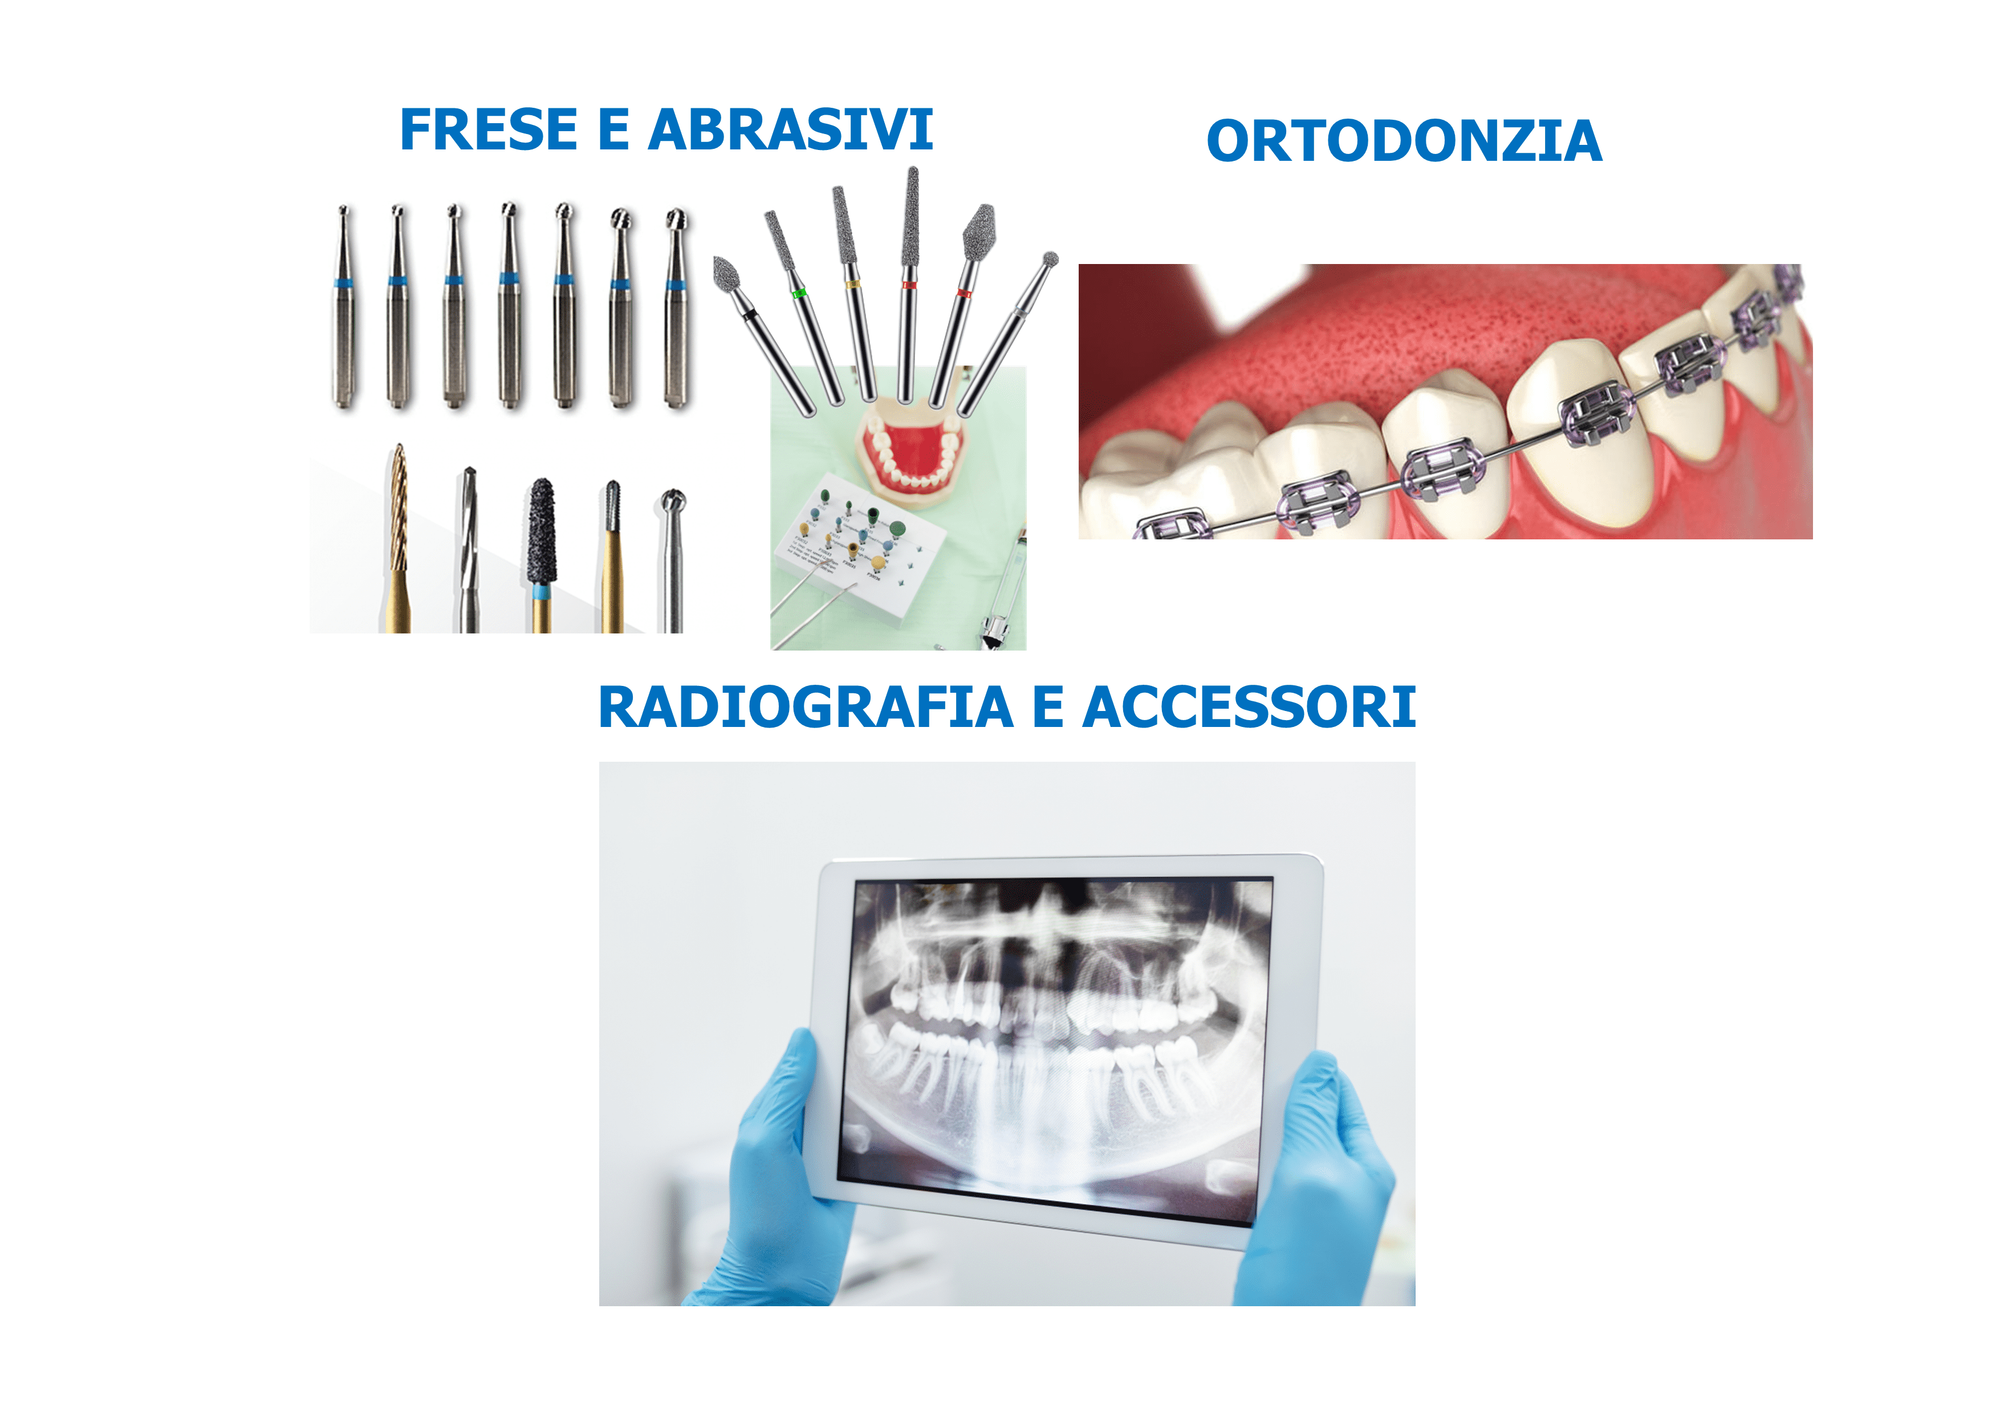 Promo Frese e Abrasivi-Ortodonzia-Radiografia e Accessori